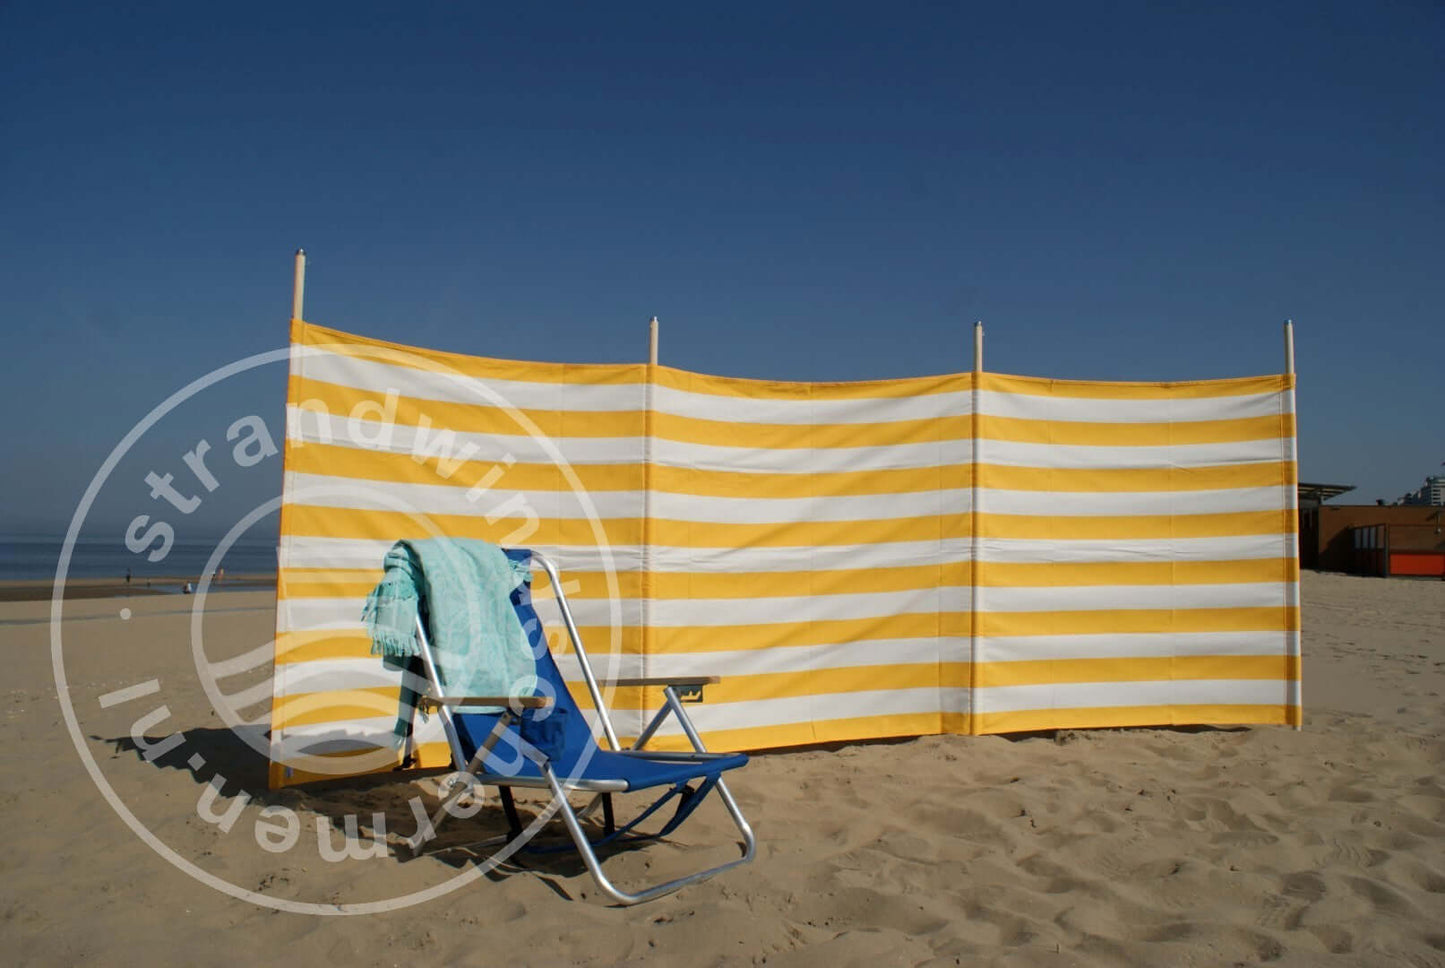 4 m gelb/weißer Dralon- Windschutz – 4 m